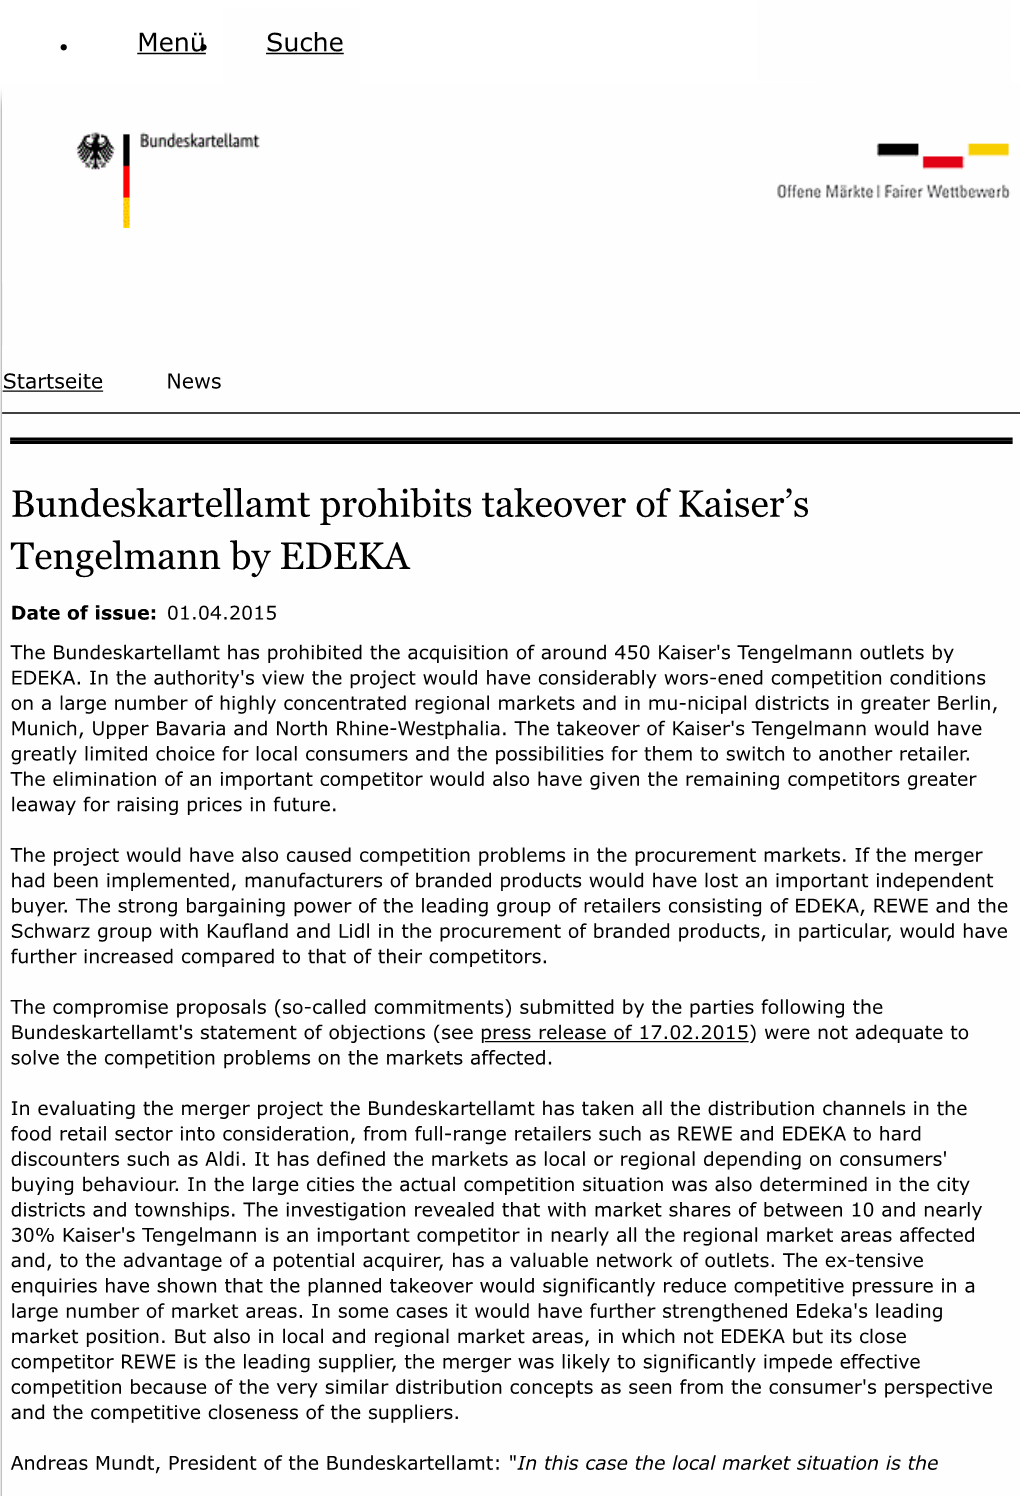 Bundeskartellamt Prohibits Takeover of Kaiser's Tengelmann by EDEKA